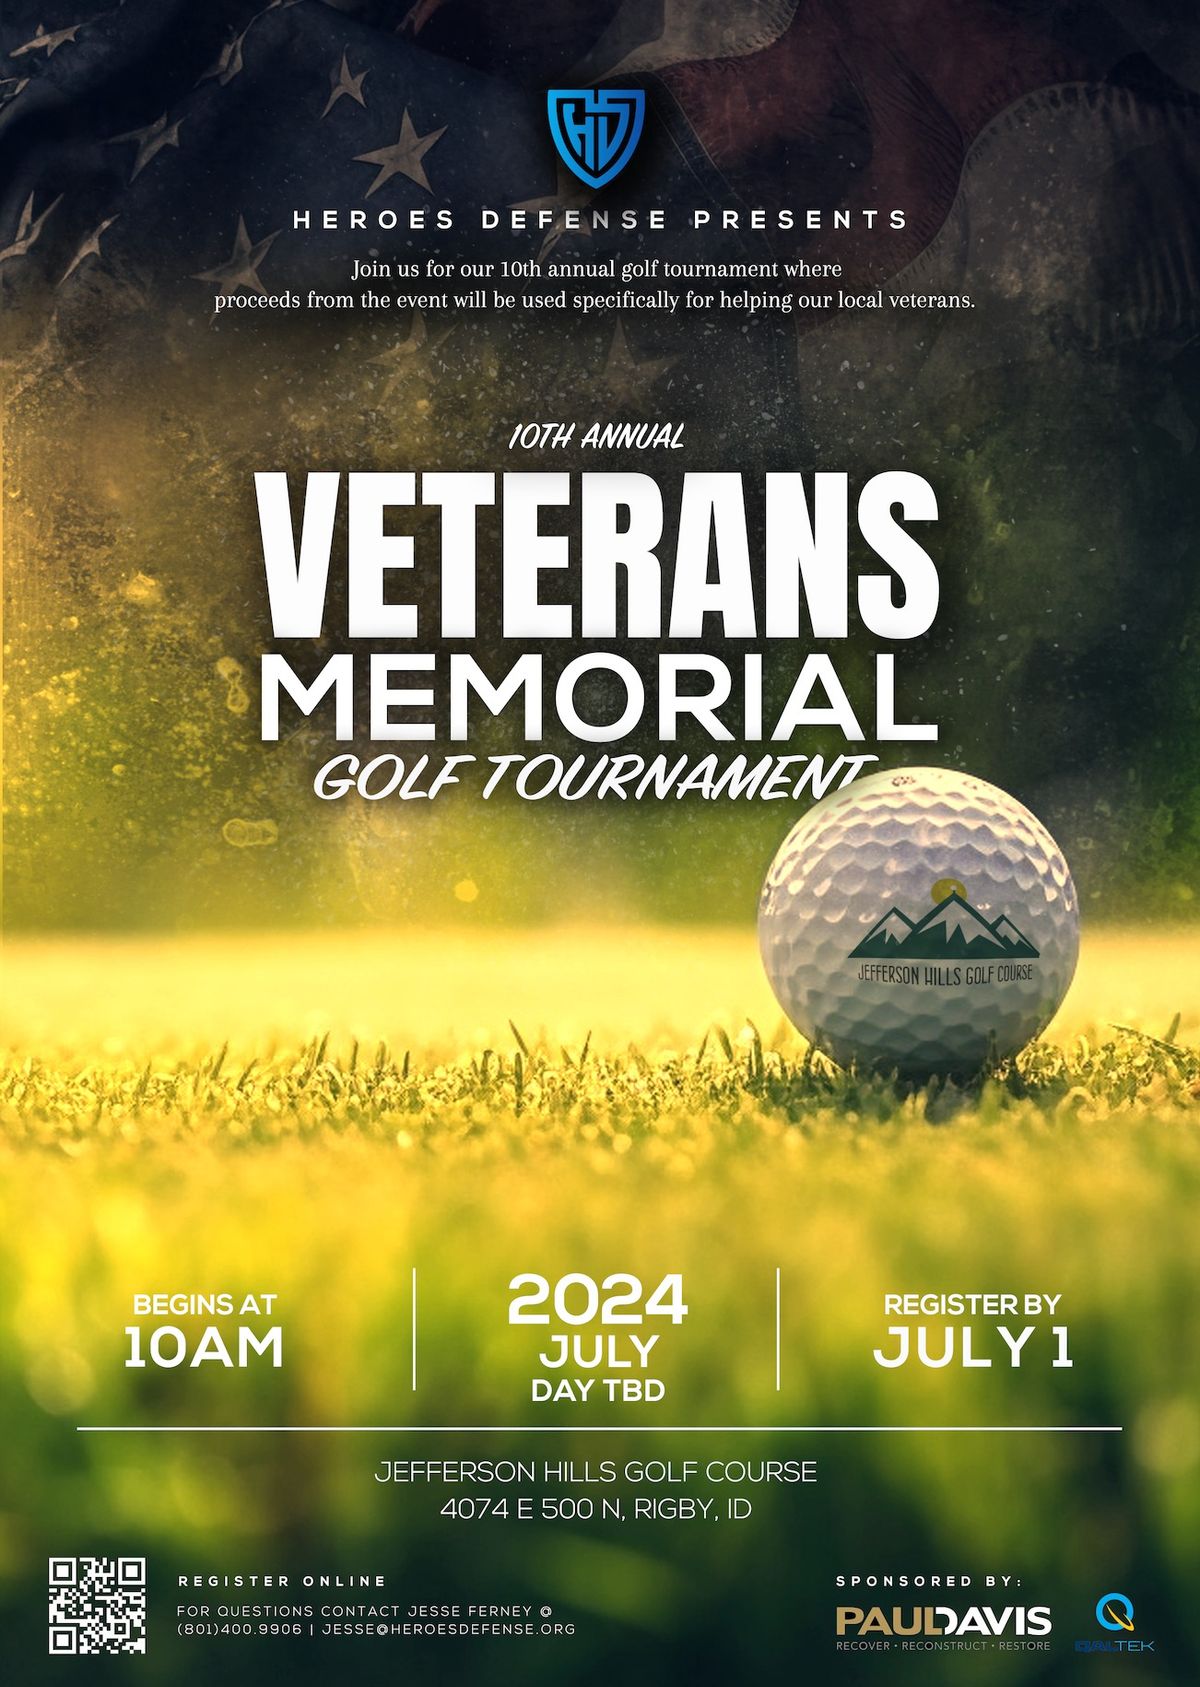 Veterans Memorial Golf Tournament at Jefferson Hills